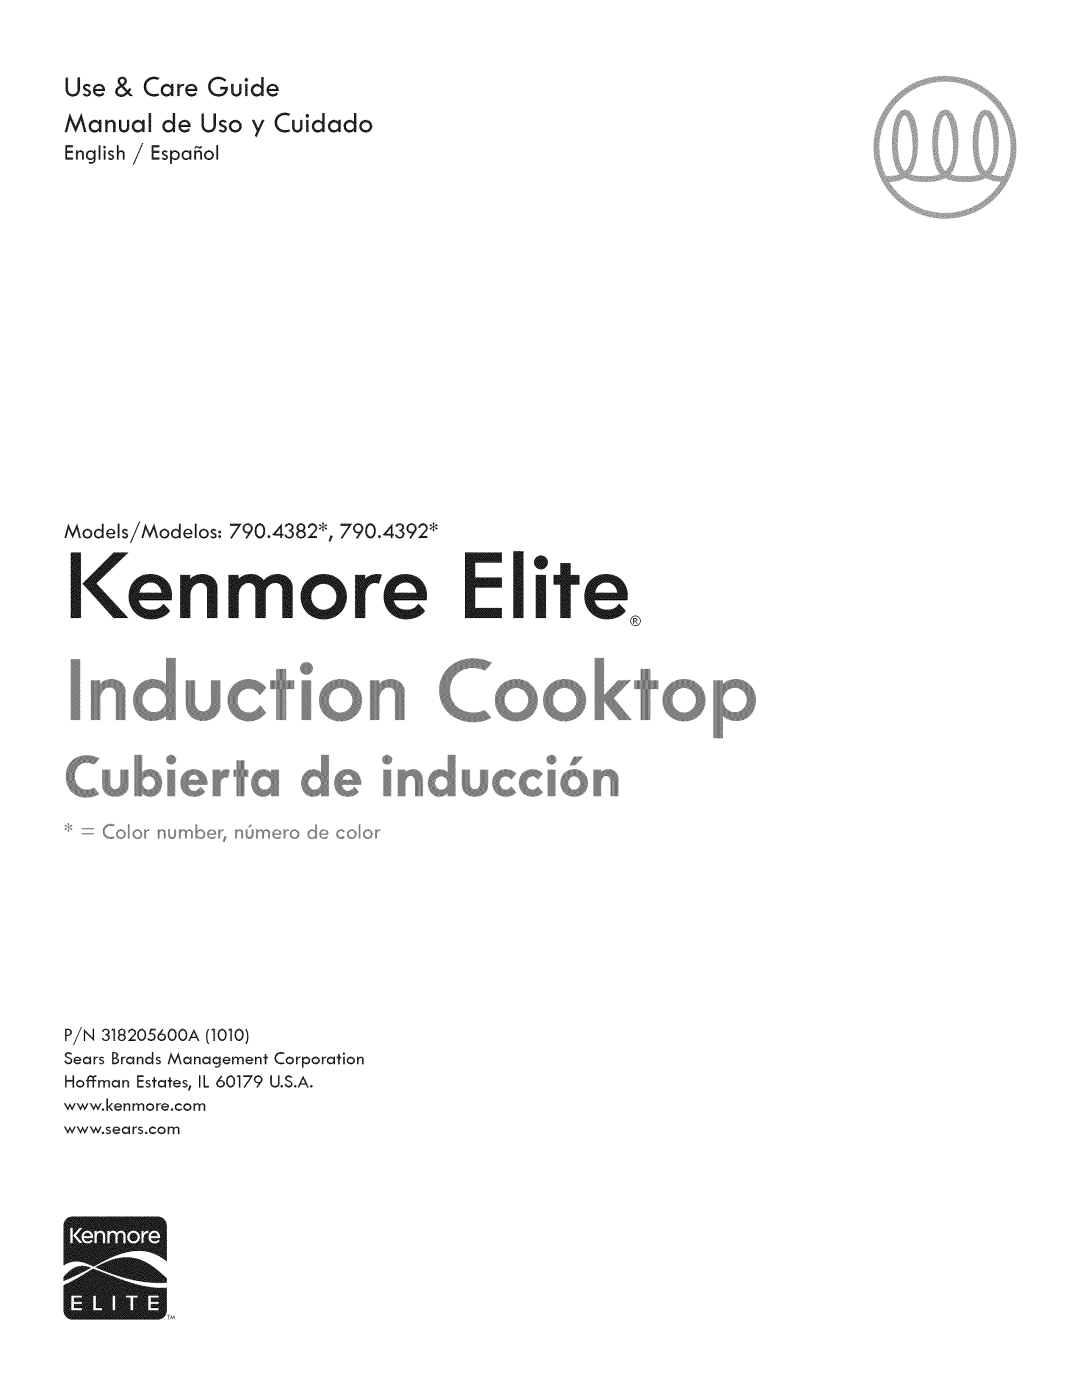 Kenmore 790.4382* manual Use & Care Guide, Manual de Uso y Cuidado, P/N 318205600A, Hoffman Estates IL 60179 U.S.A 